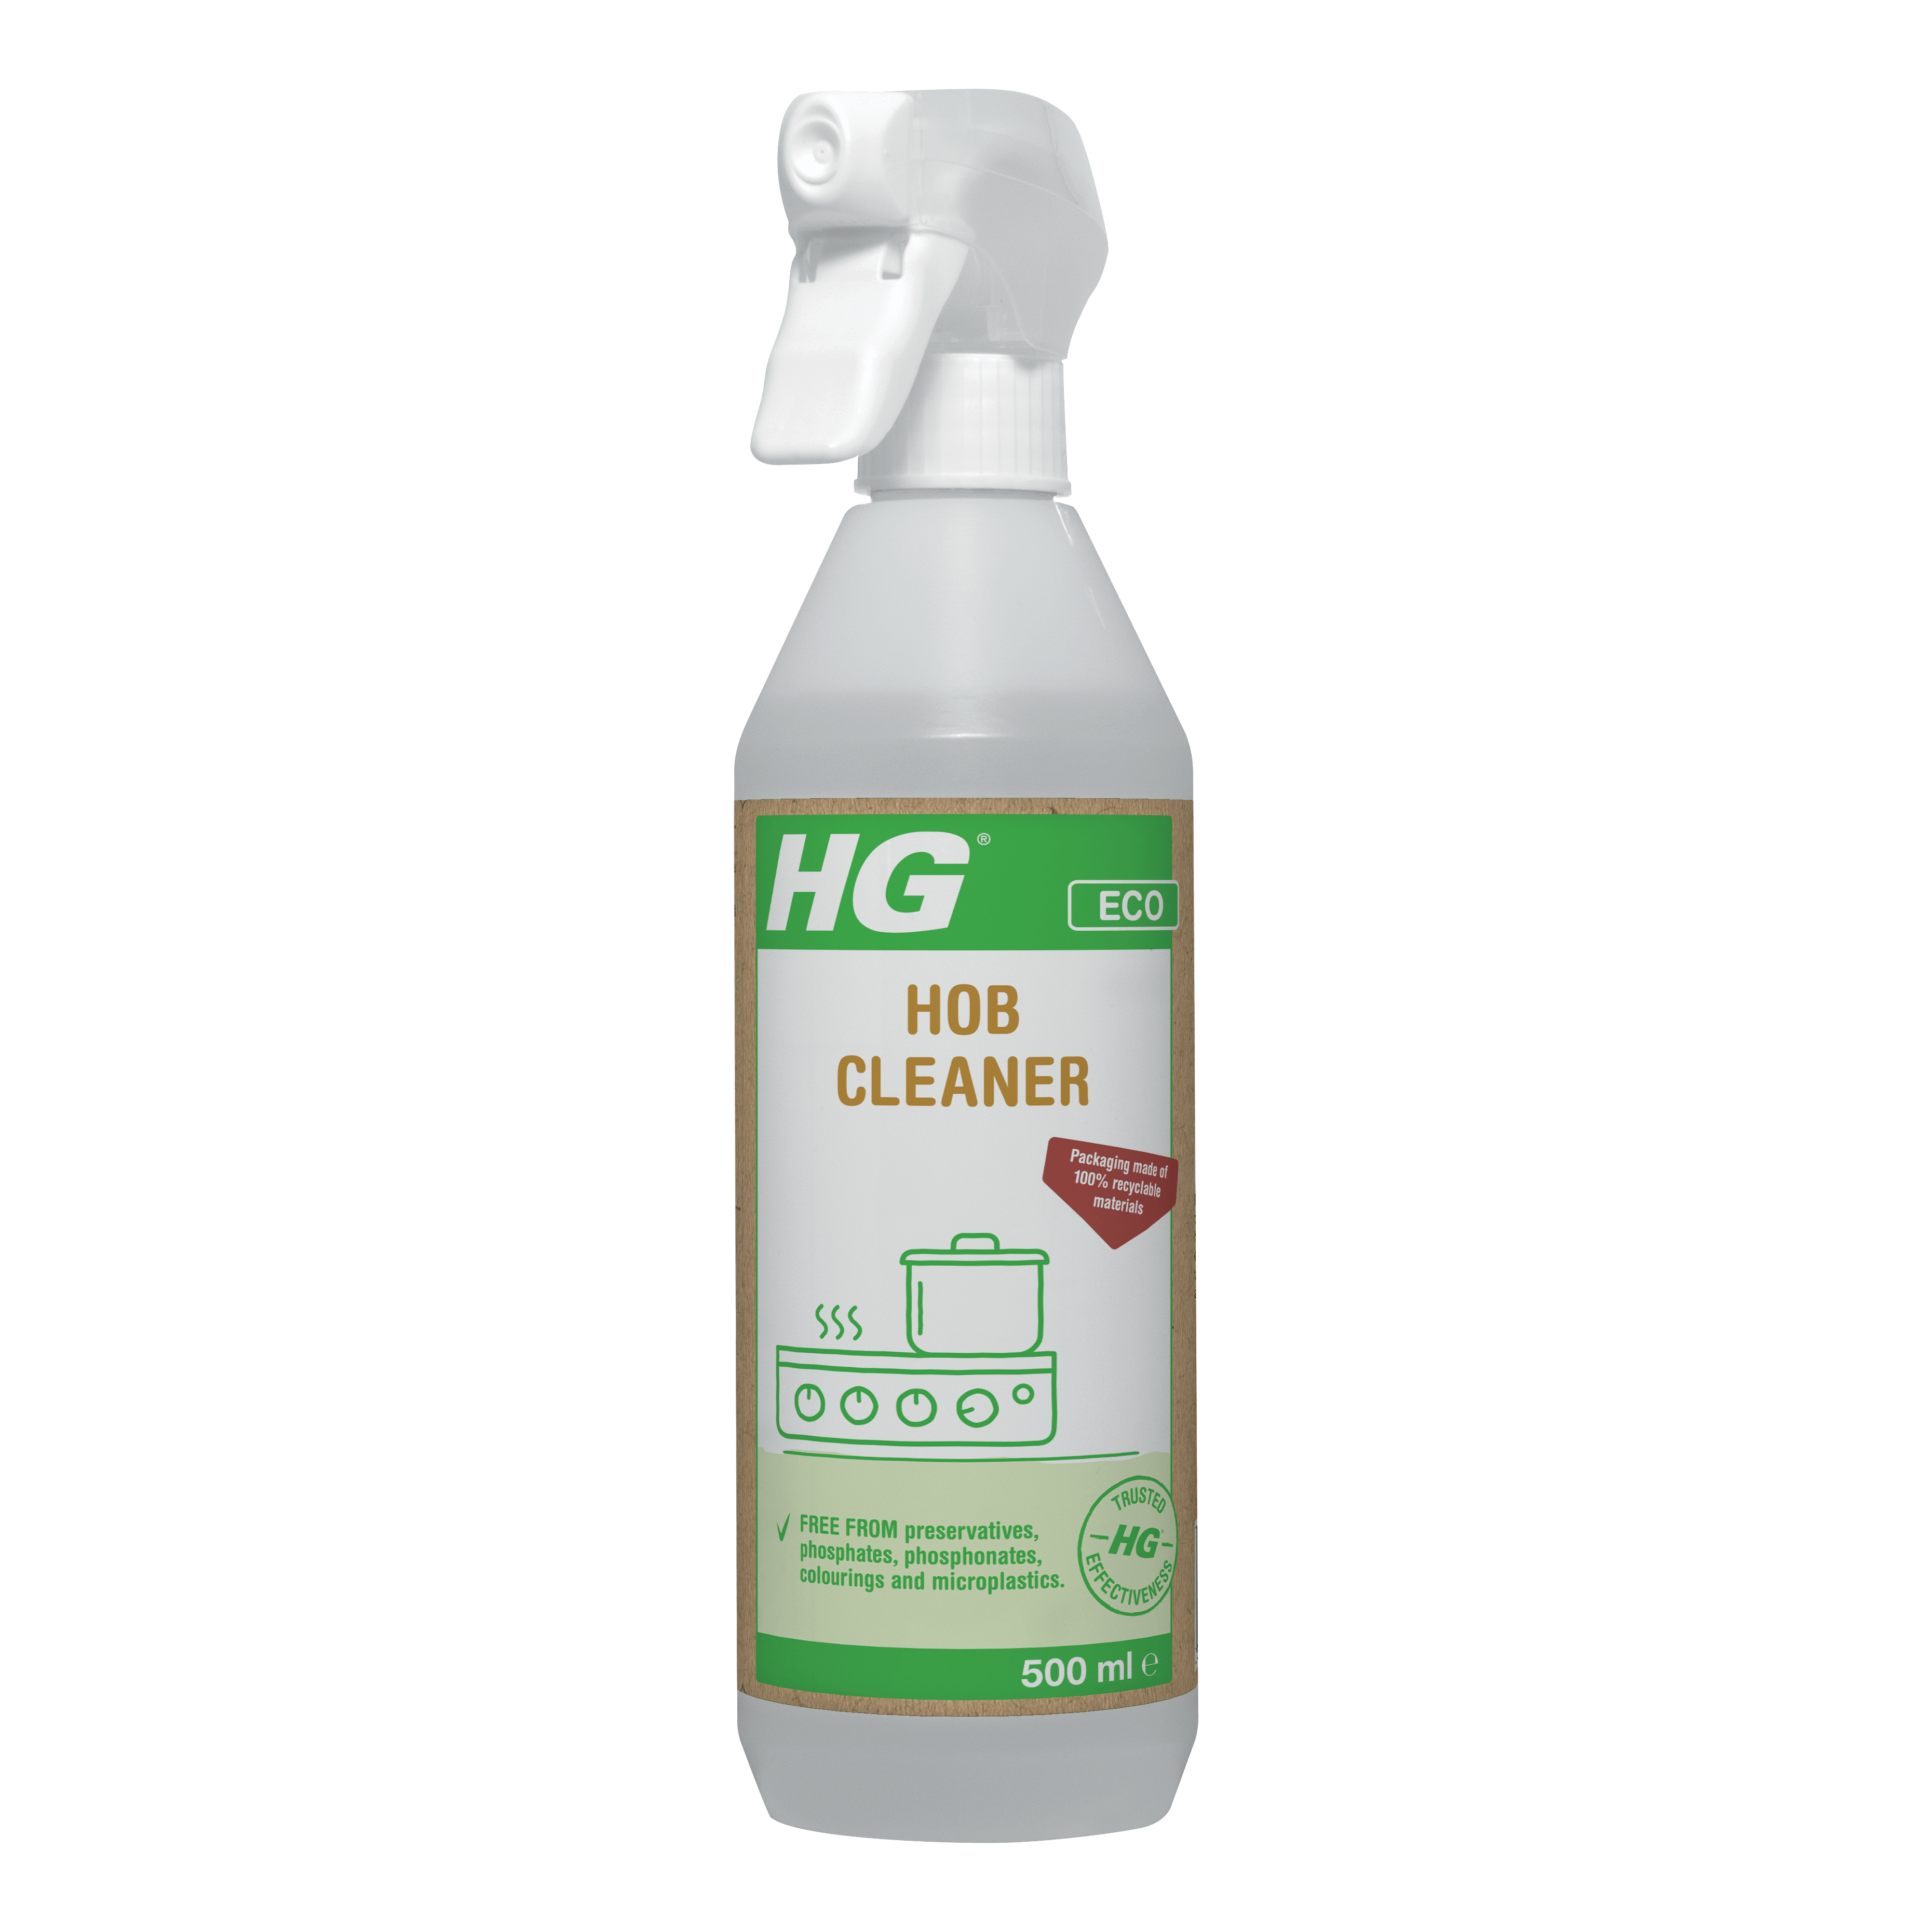 HG ECO Hob Cleaner 500ml